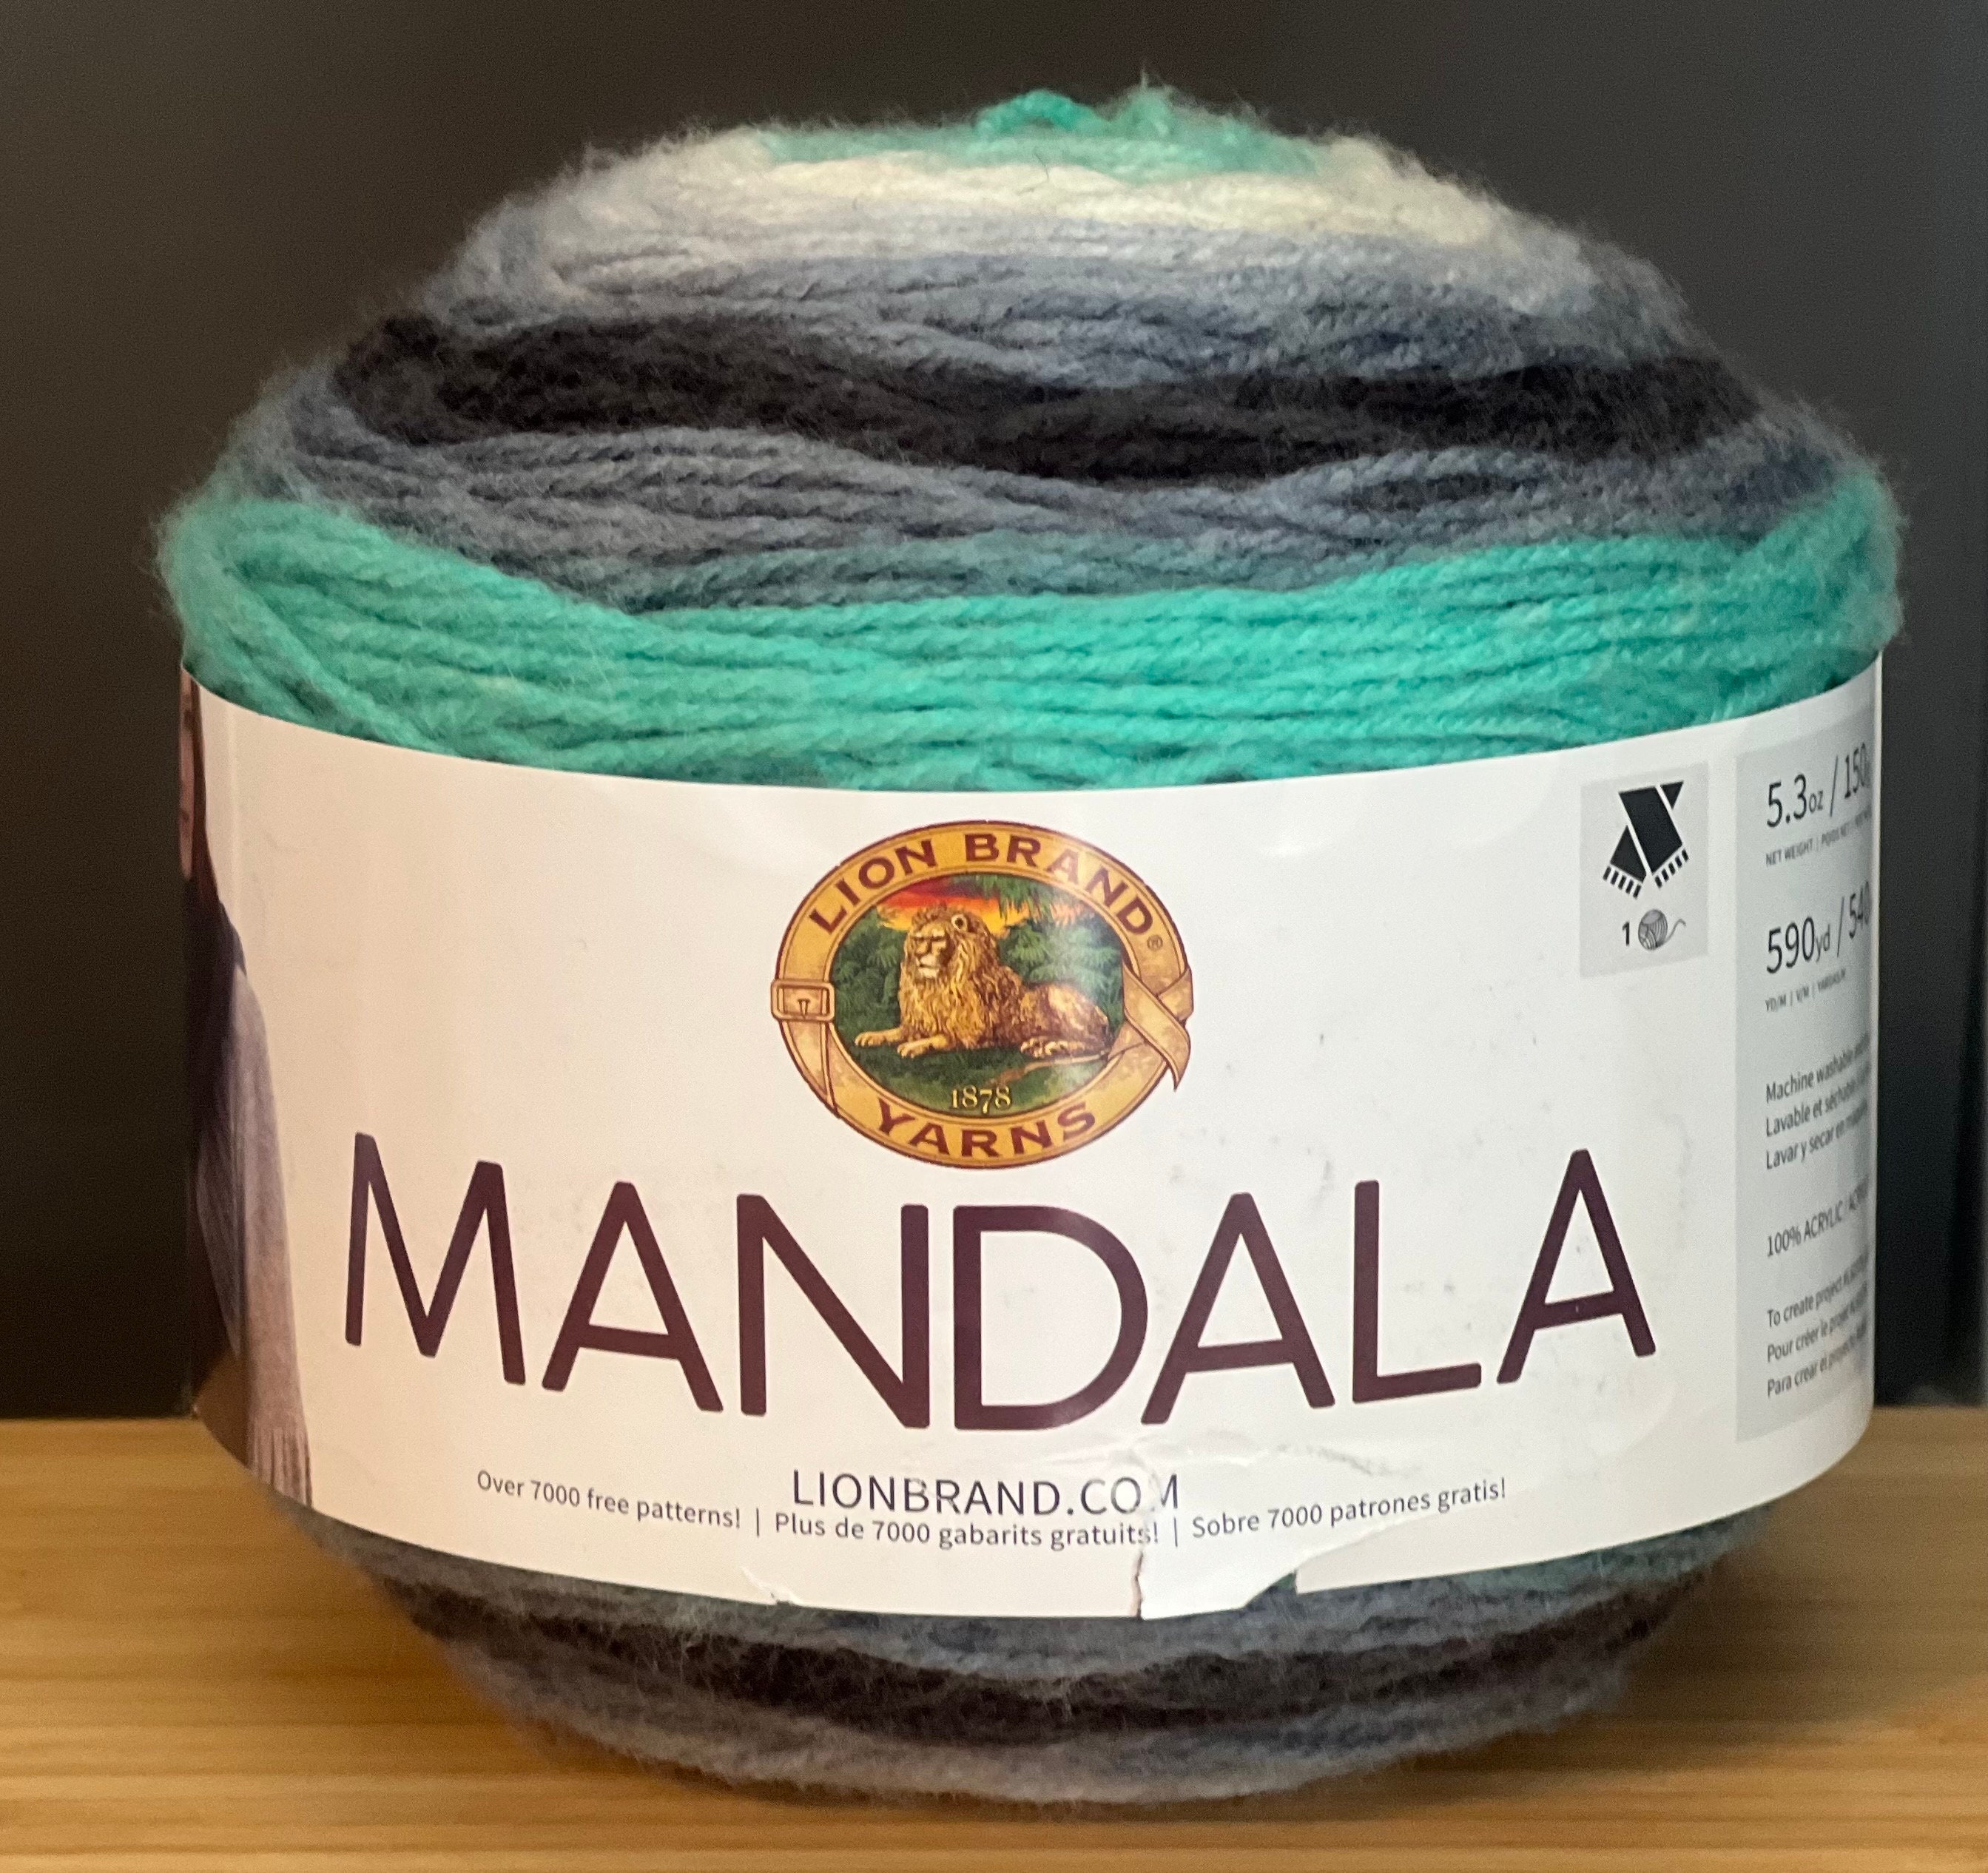  Lion Brand Yarn Mandala Yarn, Multicolor Yarn for Crocheting  and Knitting, Craft Yarn, 1-Pack, Genie